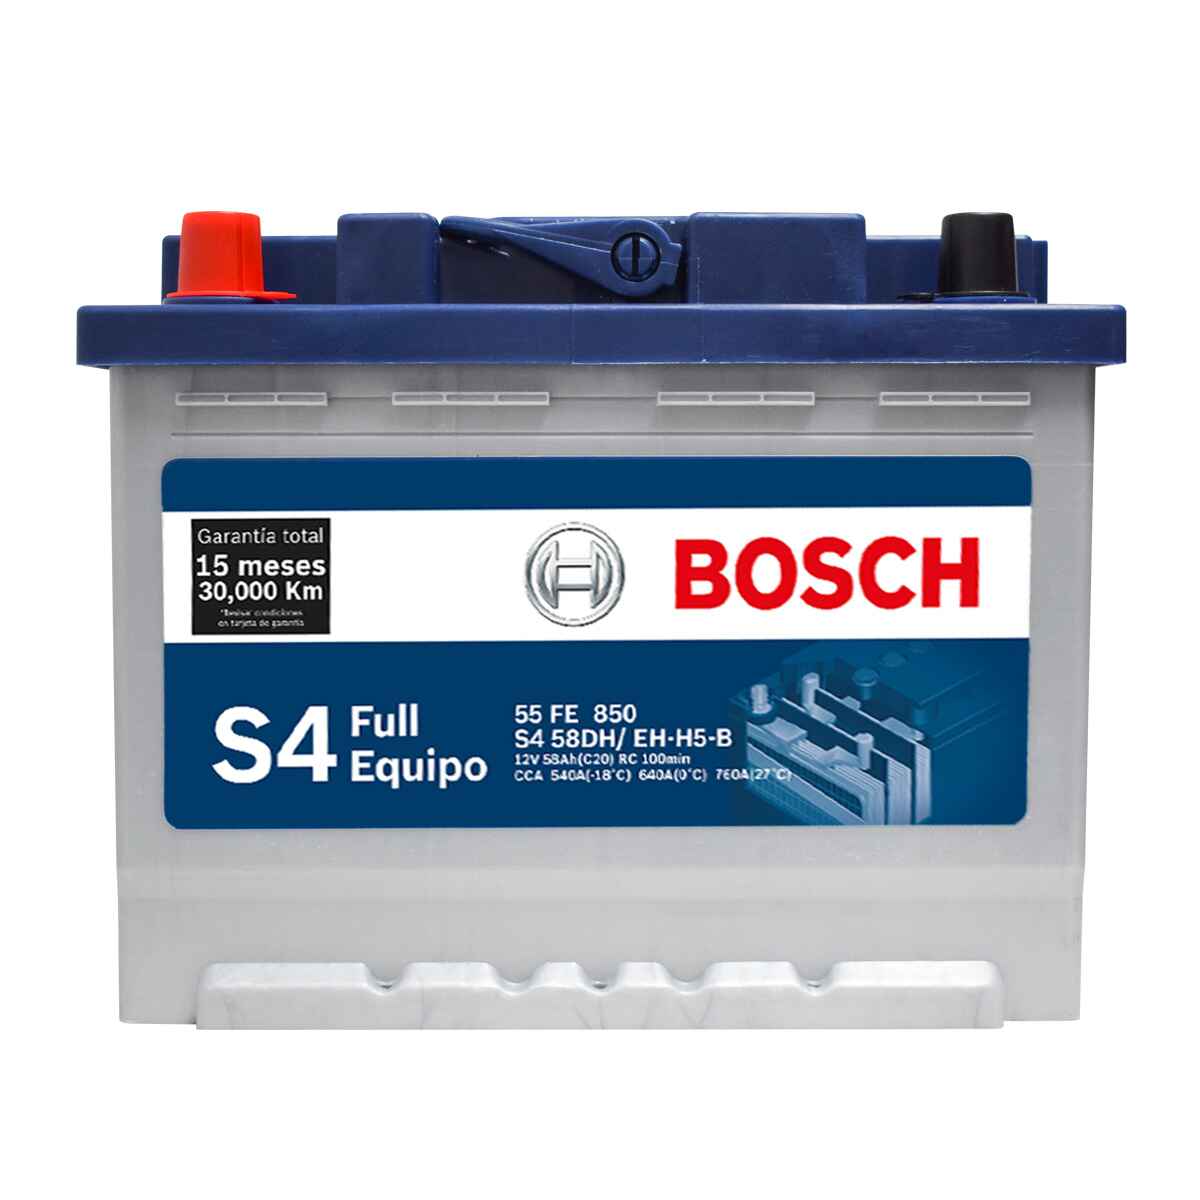 Bosch 55 HP LM